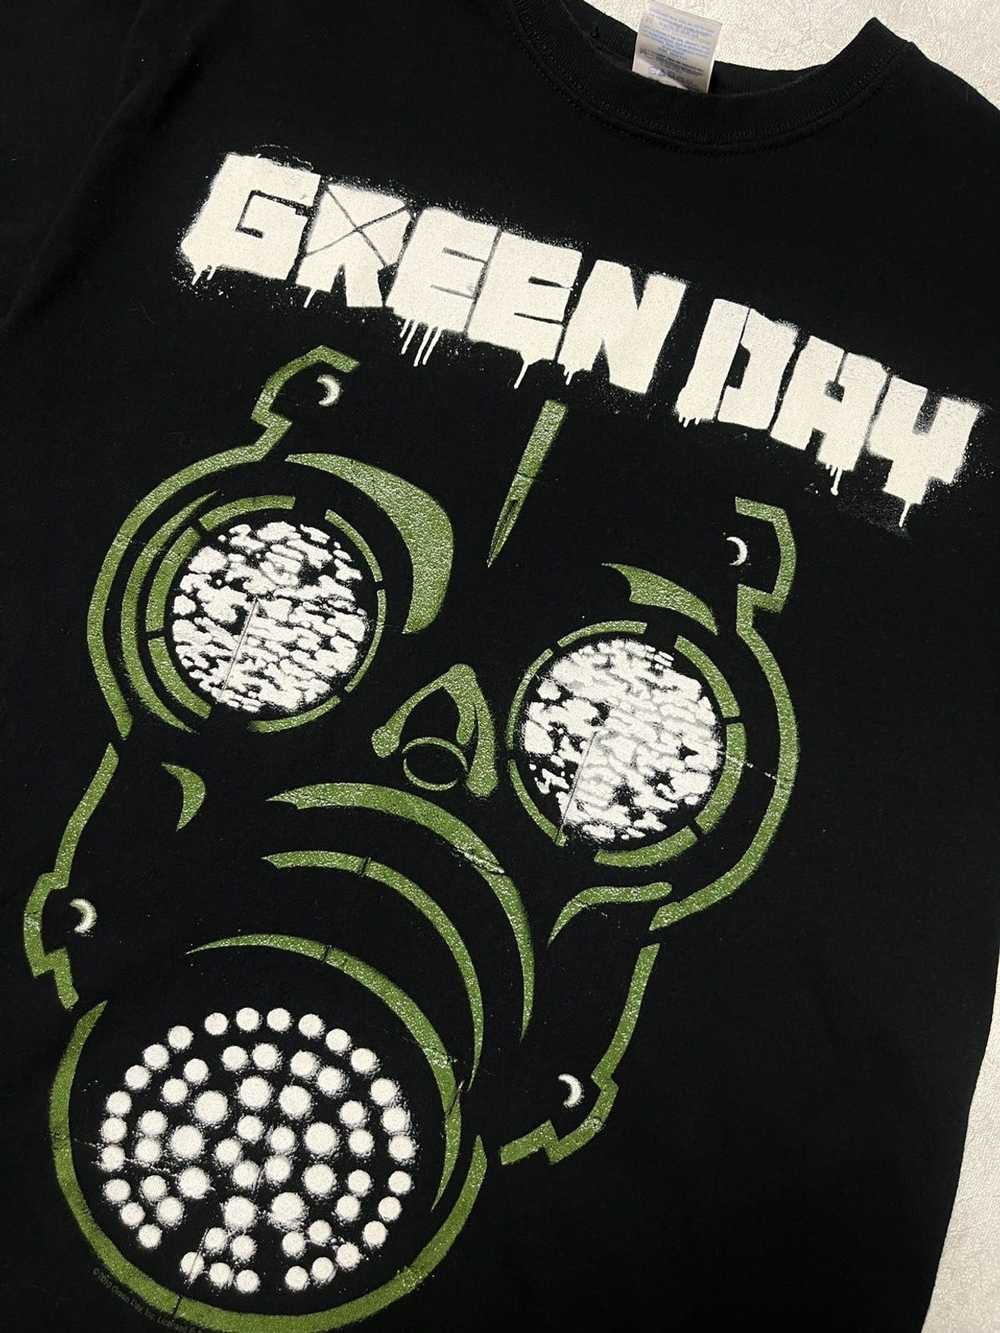 Band Tees × Vintage 2010 Green Day Band T-shirt - image 5